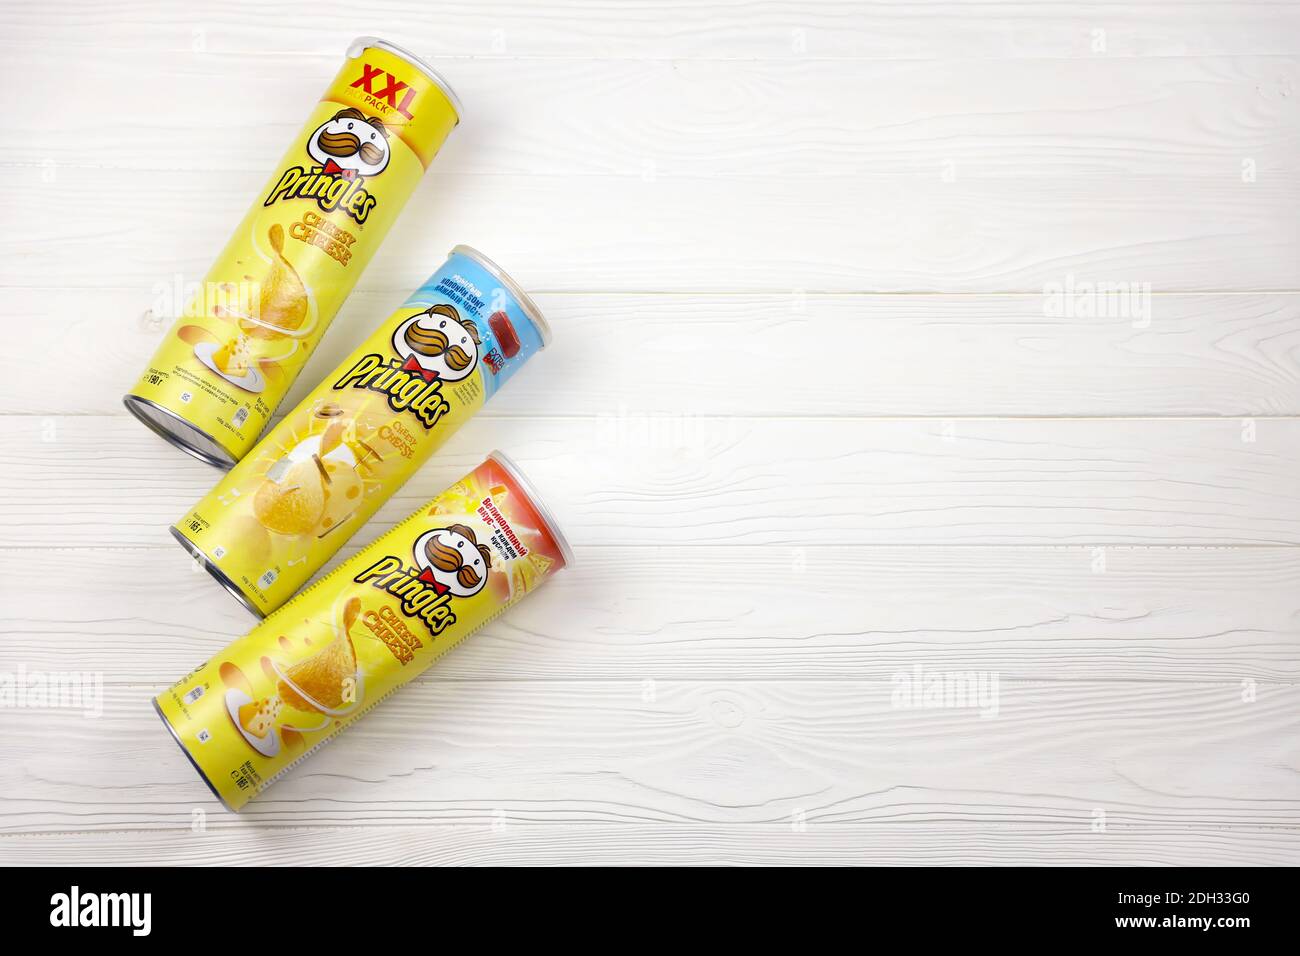 KHARKOV, UKRAINE - 23 NOVEMBRE 2020 : saveur de fromage Pringles. Boîtes en tube de carton avec chips de pommes de terre Pringles sur table blanche. Pringles est un soutien-gorge Banque D'Images